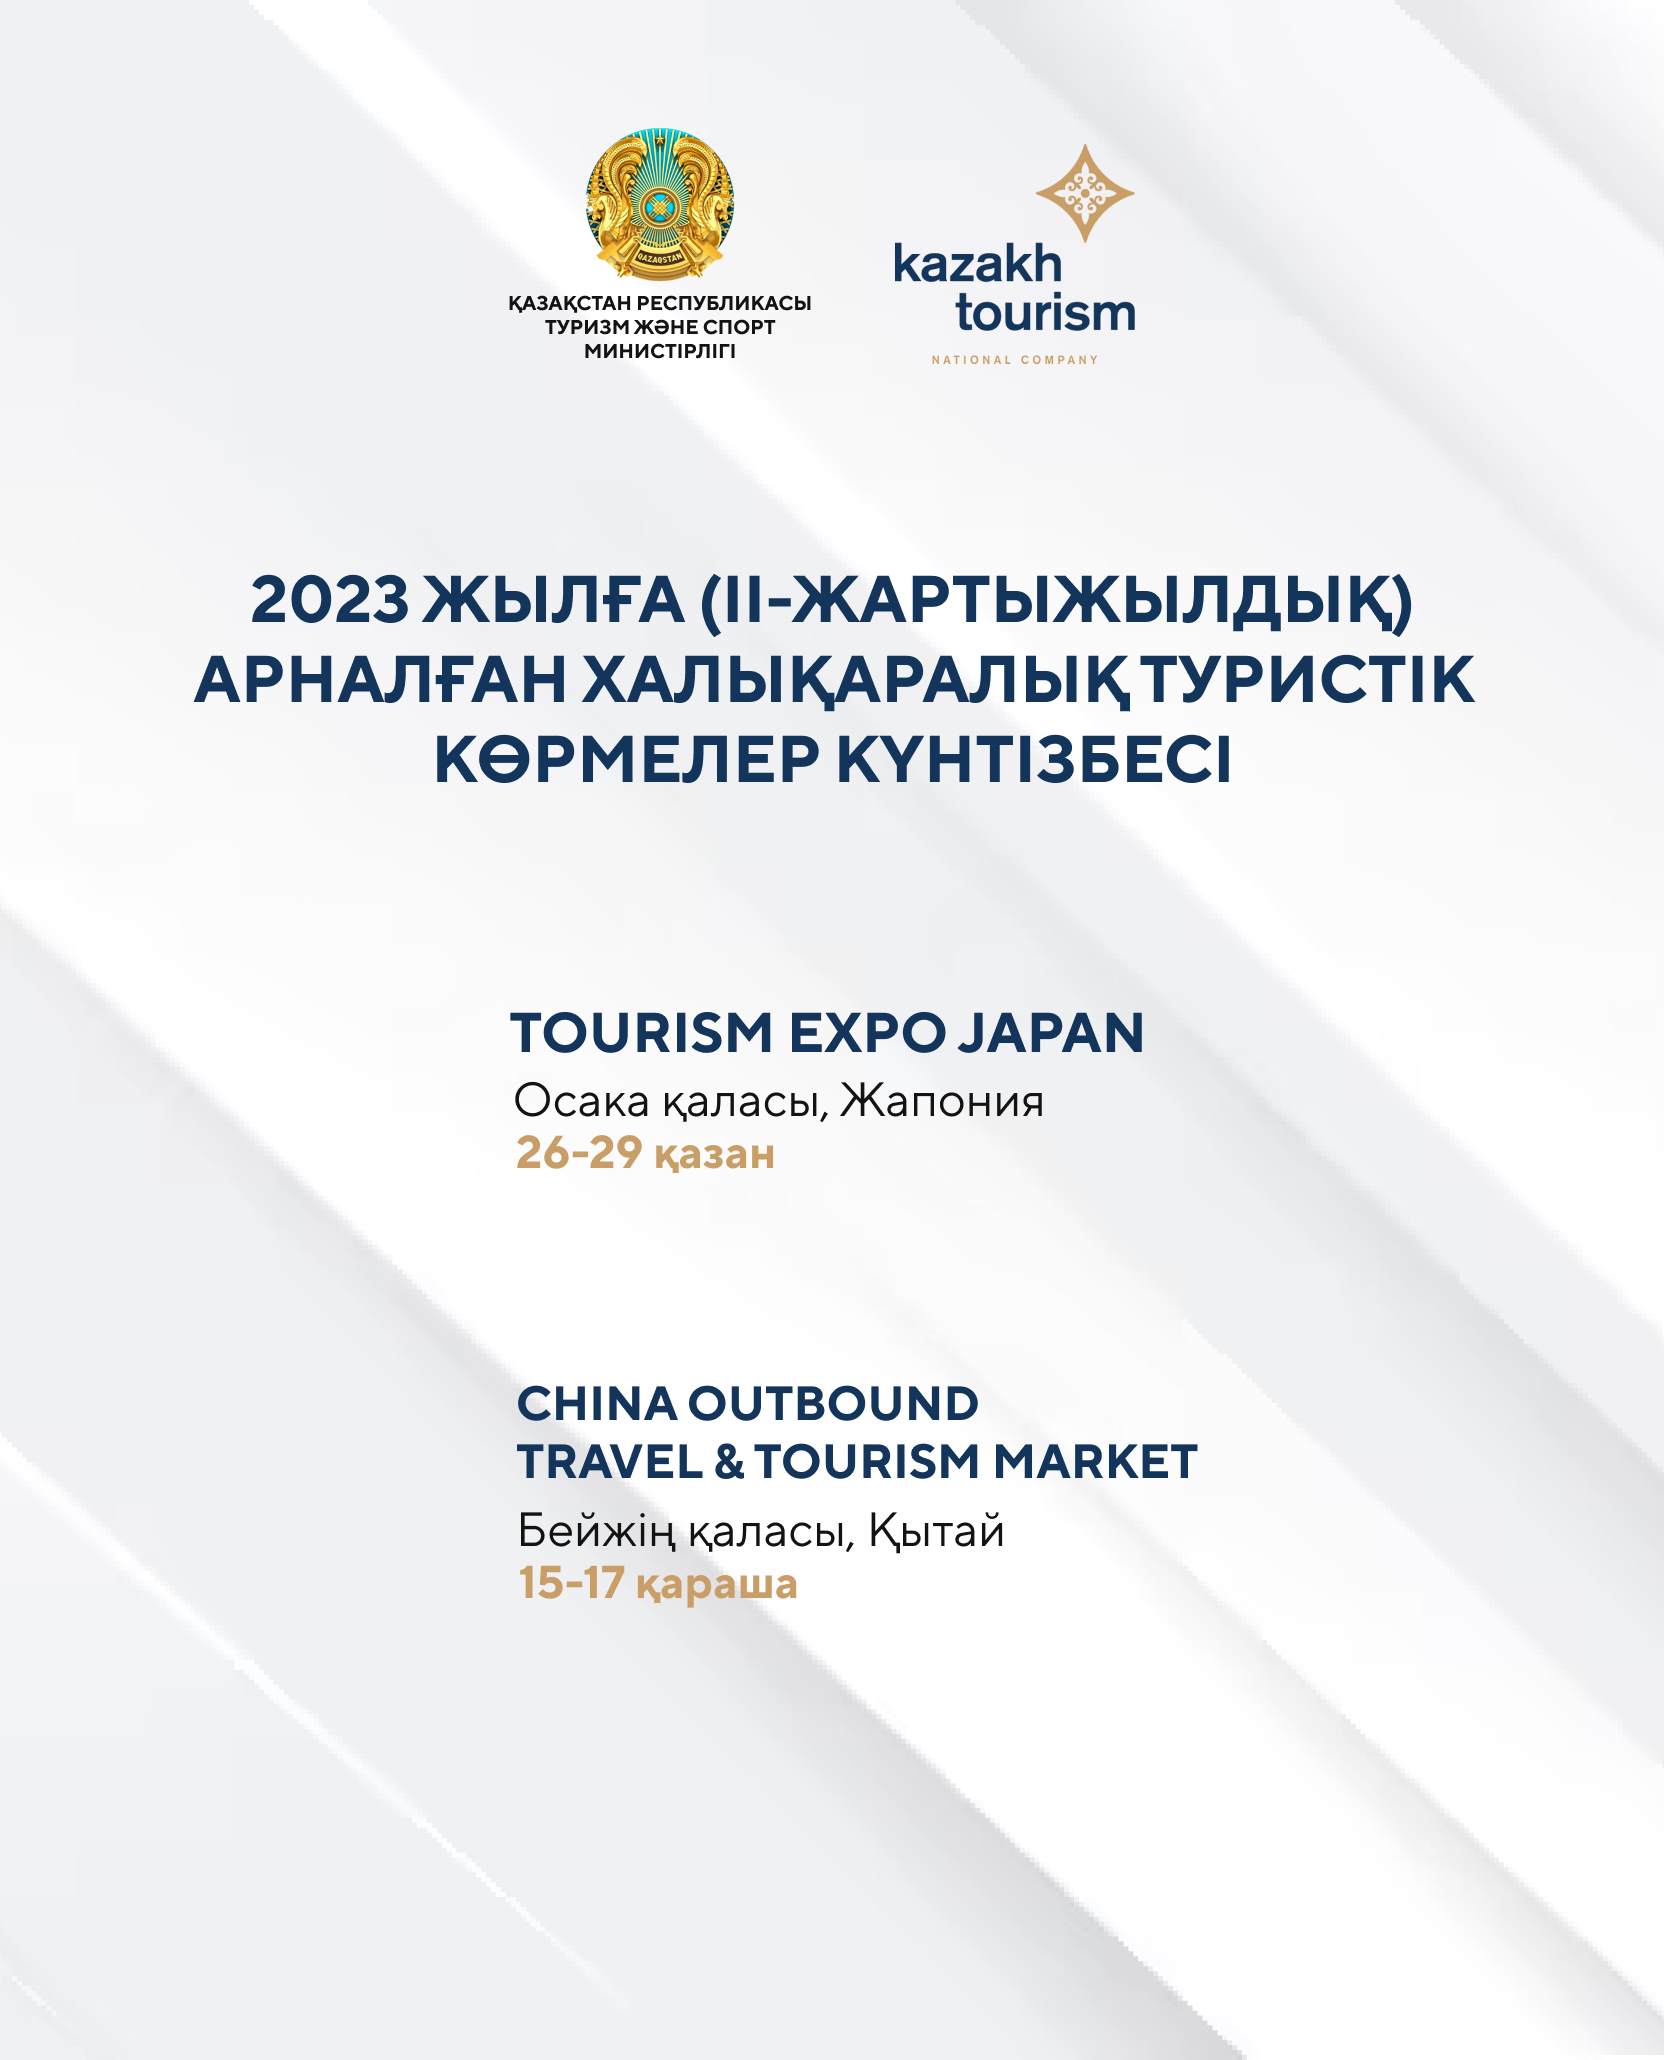 Туристік бизнес өкілдері үшін Tourism Expo Japan, China Outbound Travel & Tourism Market көрмелеріне қатысу үшін тіркеу ашылды